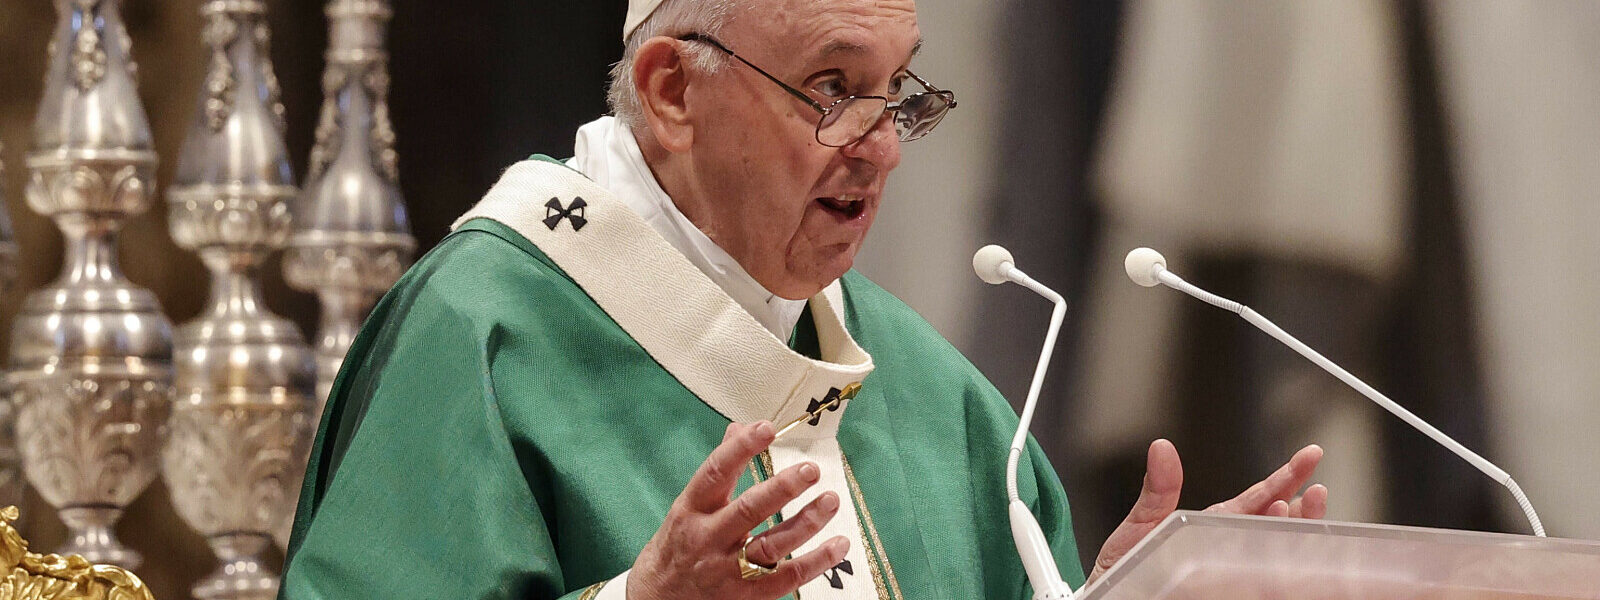 papiez:-odbywanie-synodu-oznacza-wspolne-podazanie-ta-sama-droga